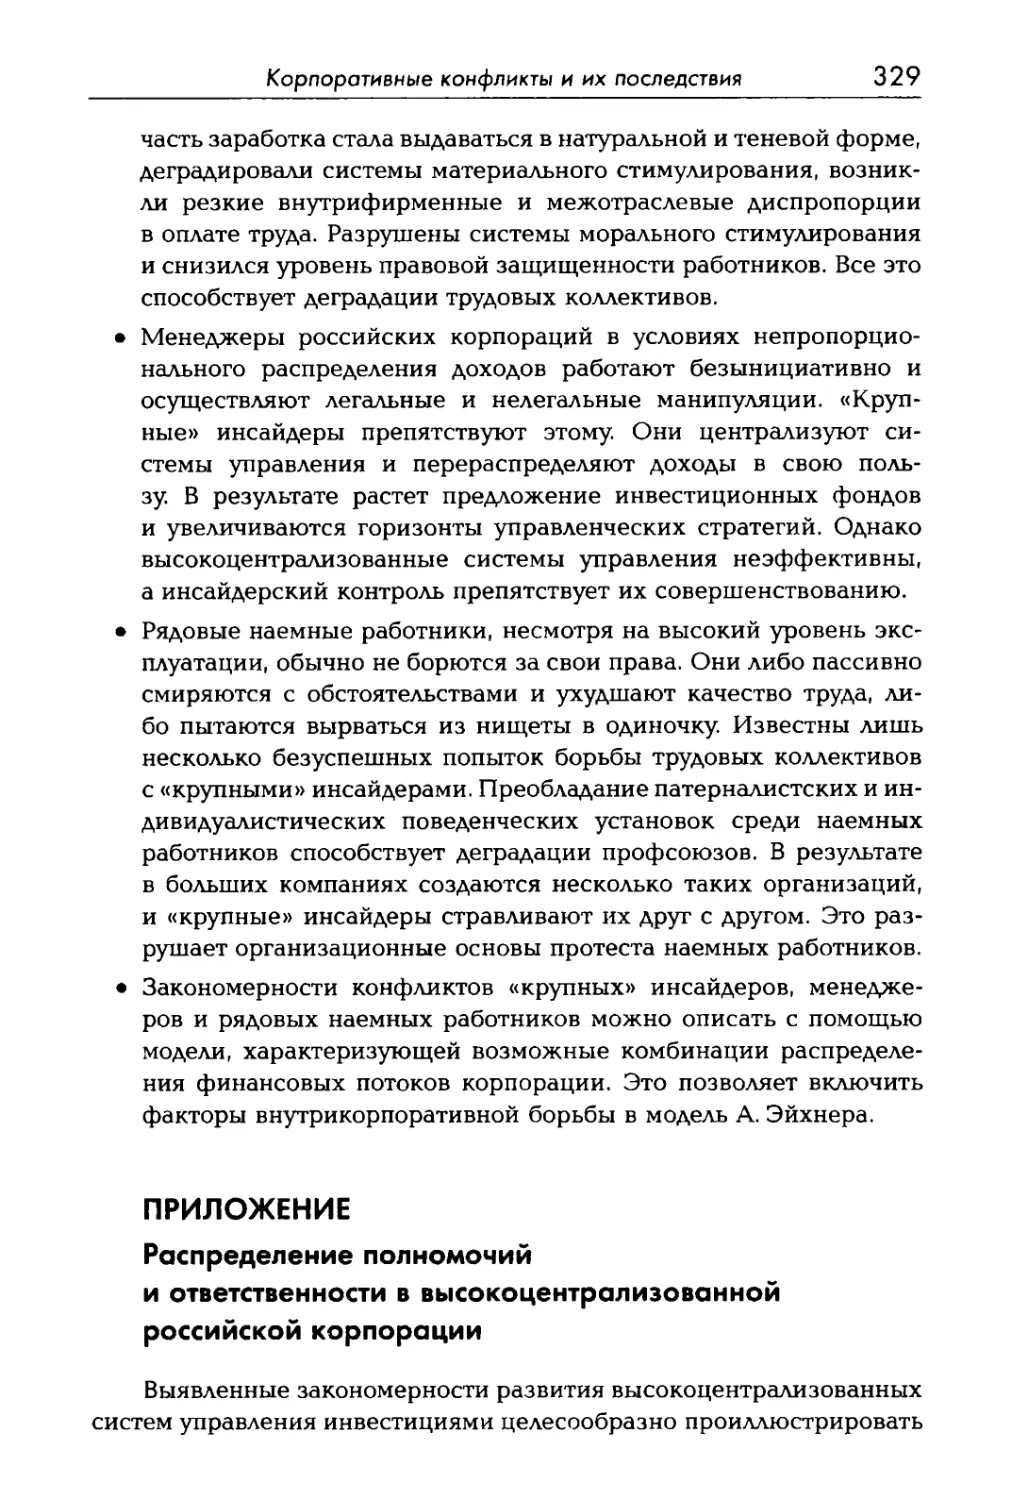 ПРИЛОЖЕНИЕ. Распределение полномочий и ответственности в высокоцентрализованной российской корпорации